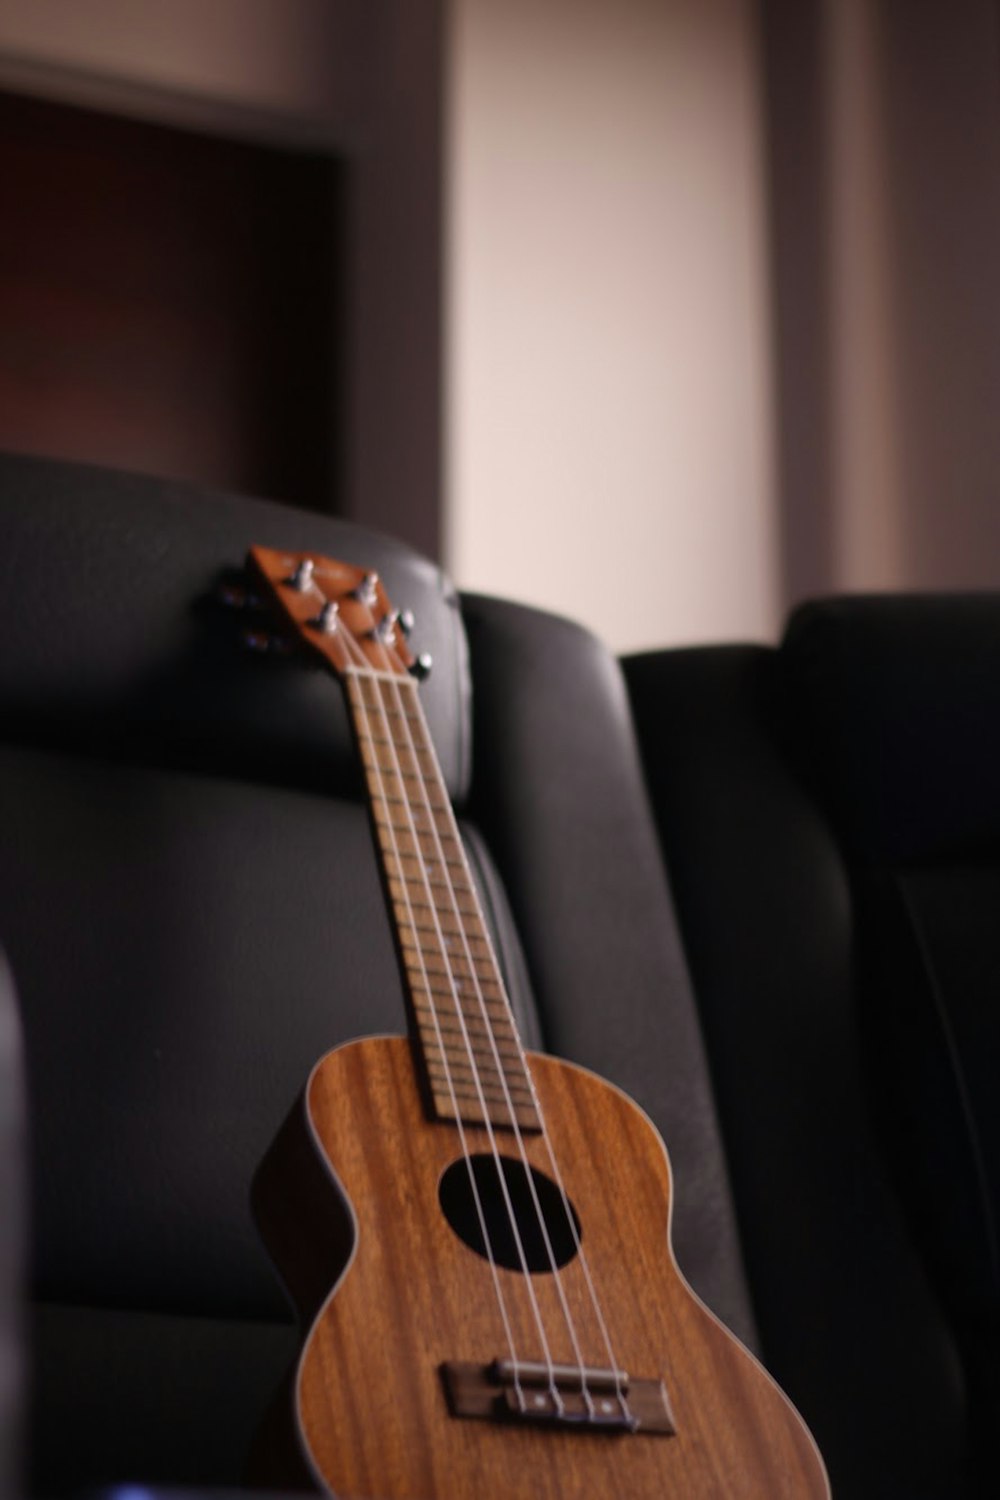 guitarra acústica marrom no sofá preto